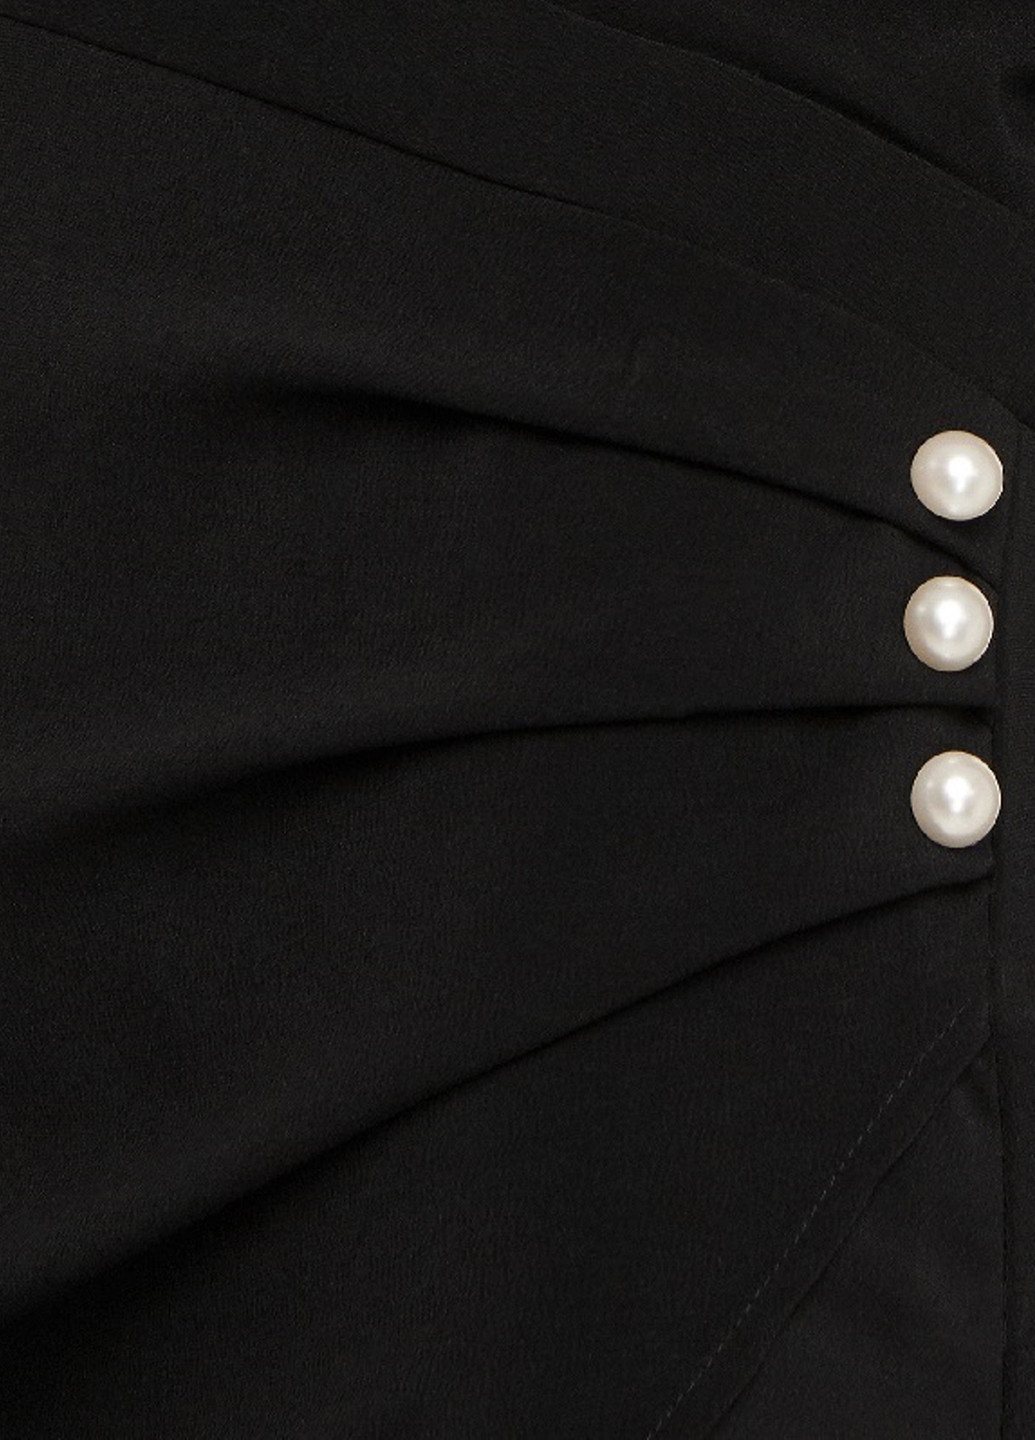 Черное деловое платье платье-жакет NA-KD однотонное